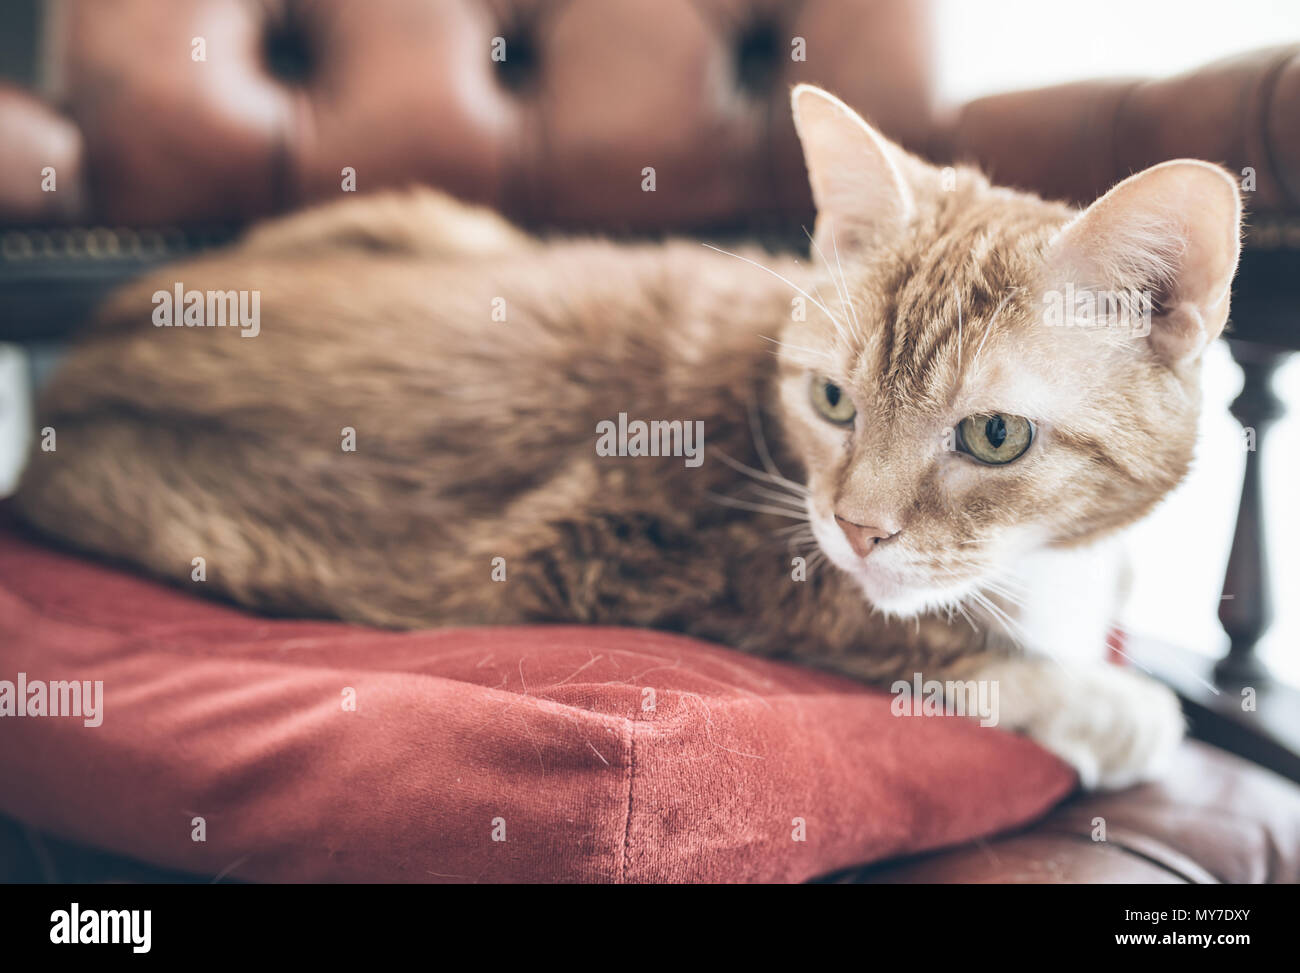 Close-up of ginger cat détente sur fauteuil Chesterfield Banque D'Images